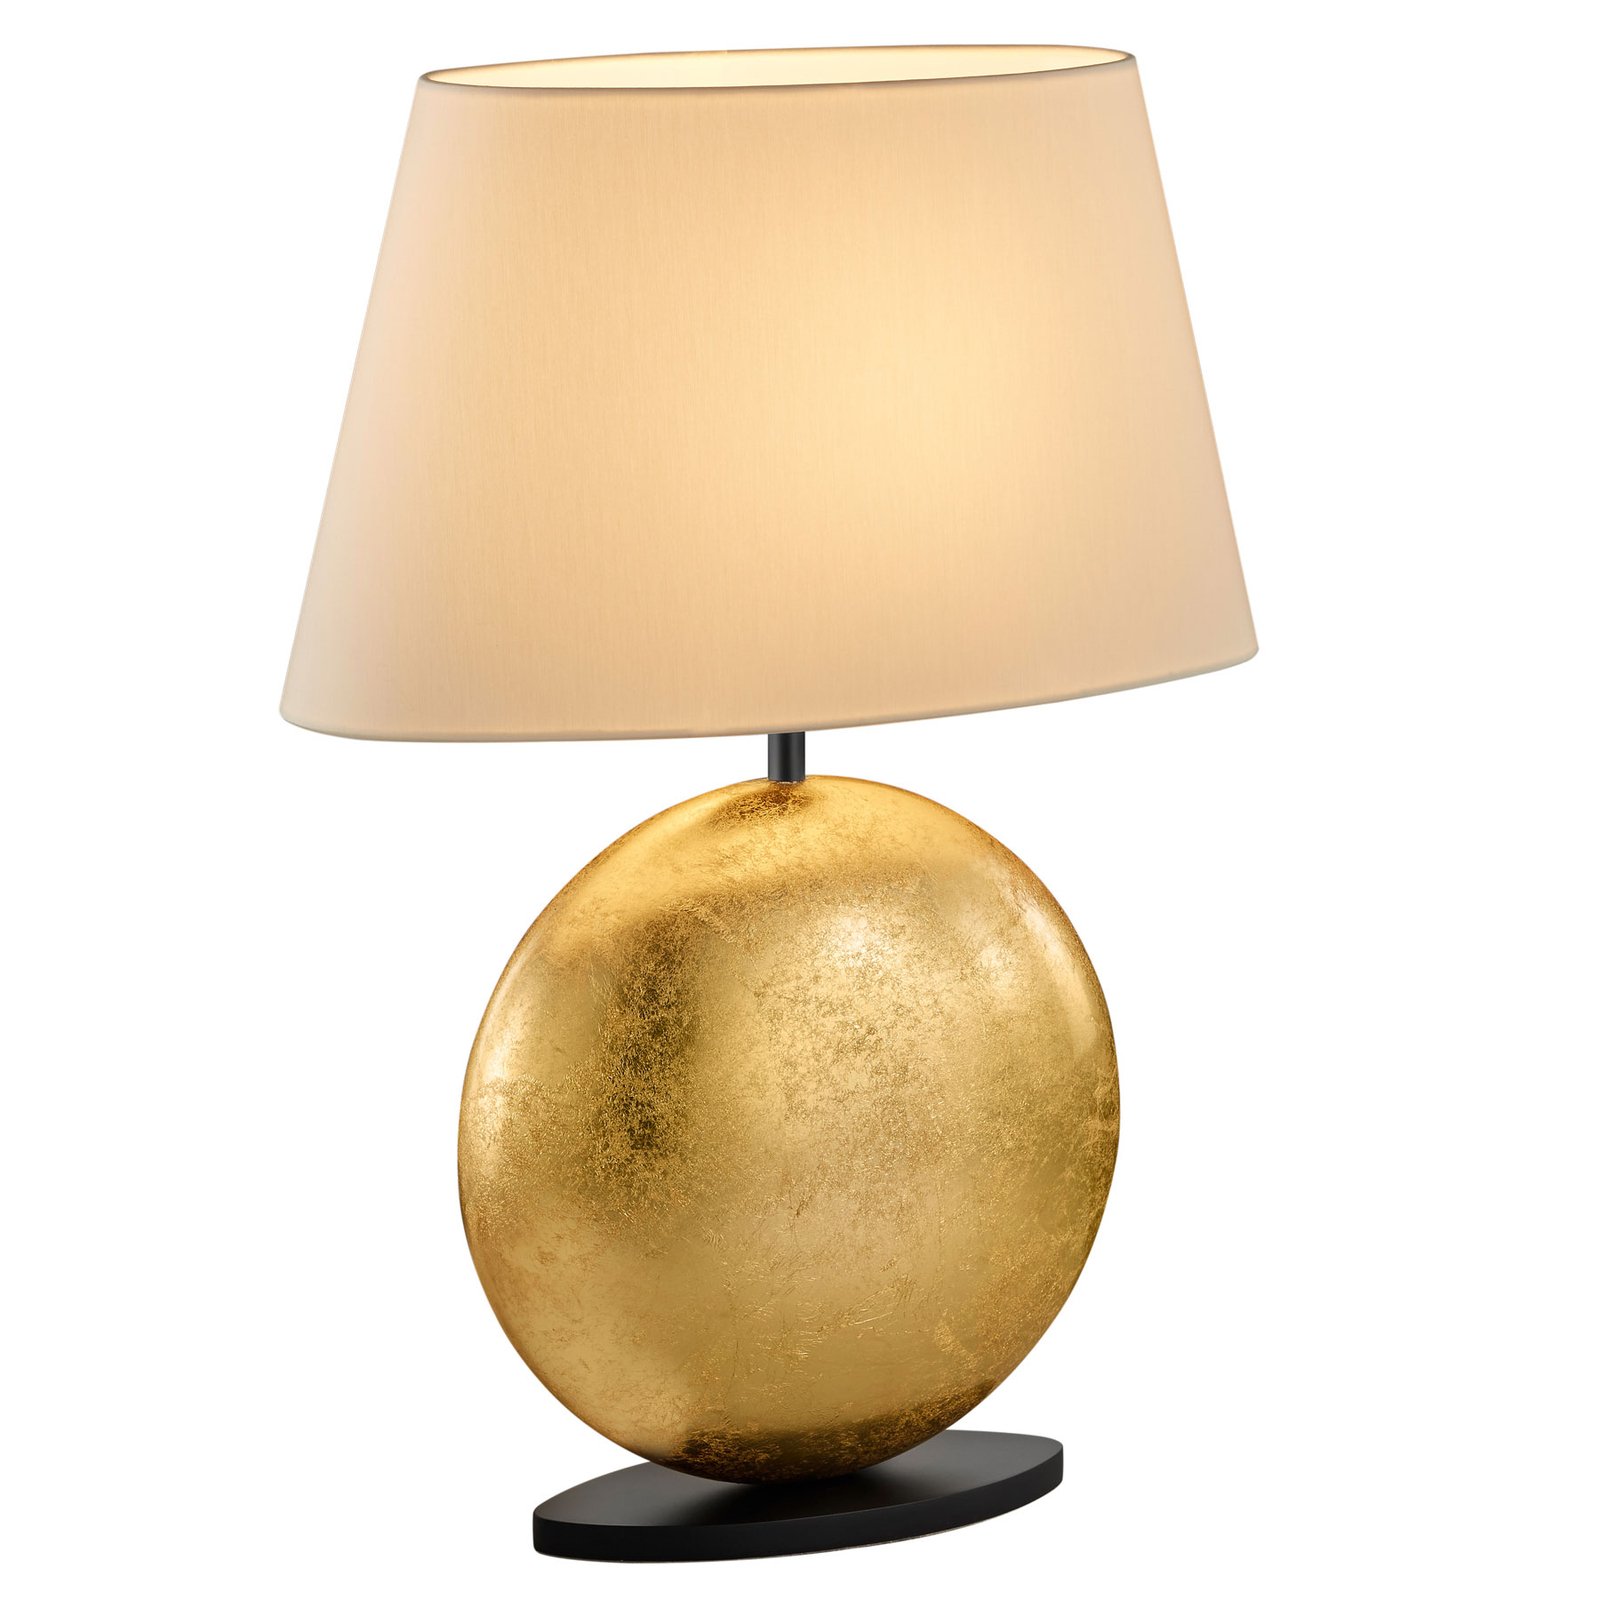 BANKAMP Mali bordslampa, kräm/guld, höjd 51cm